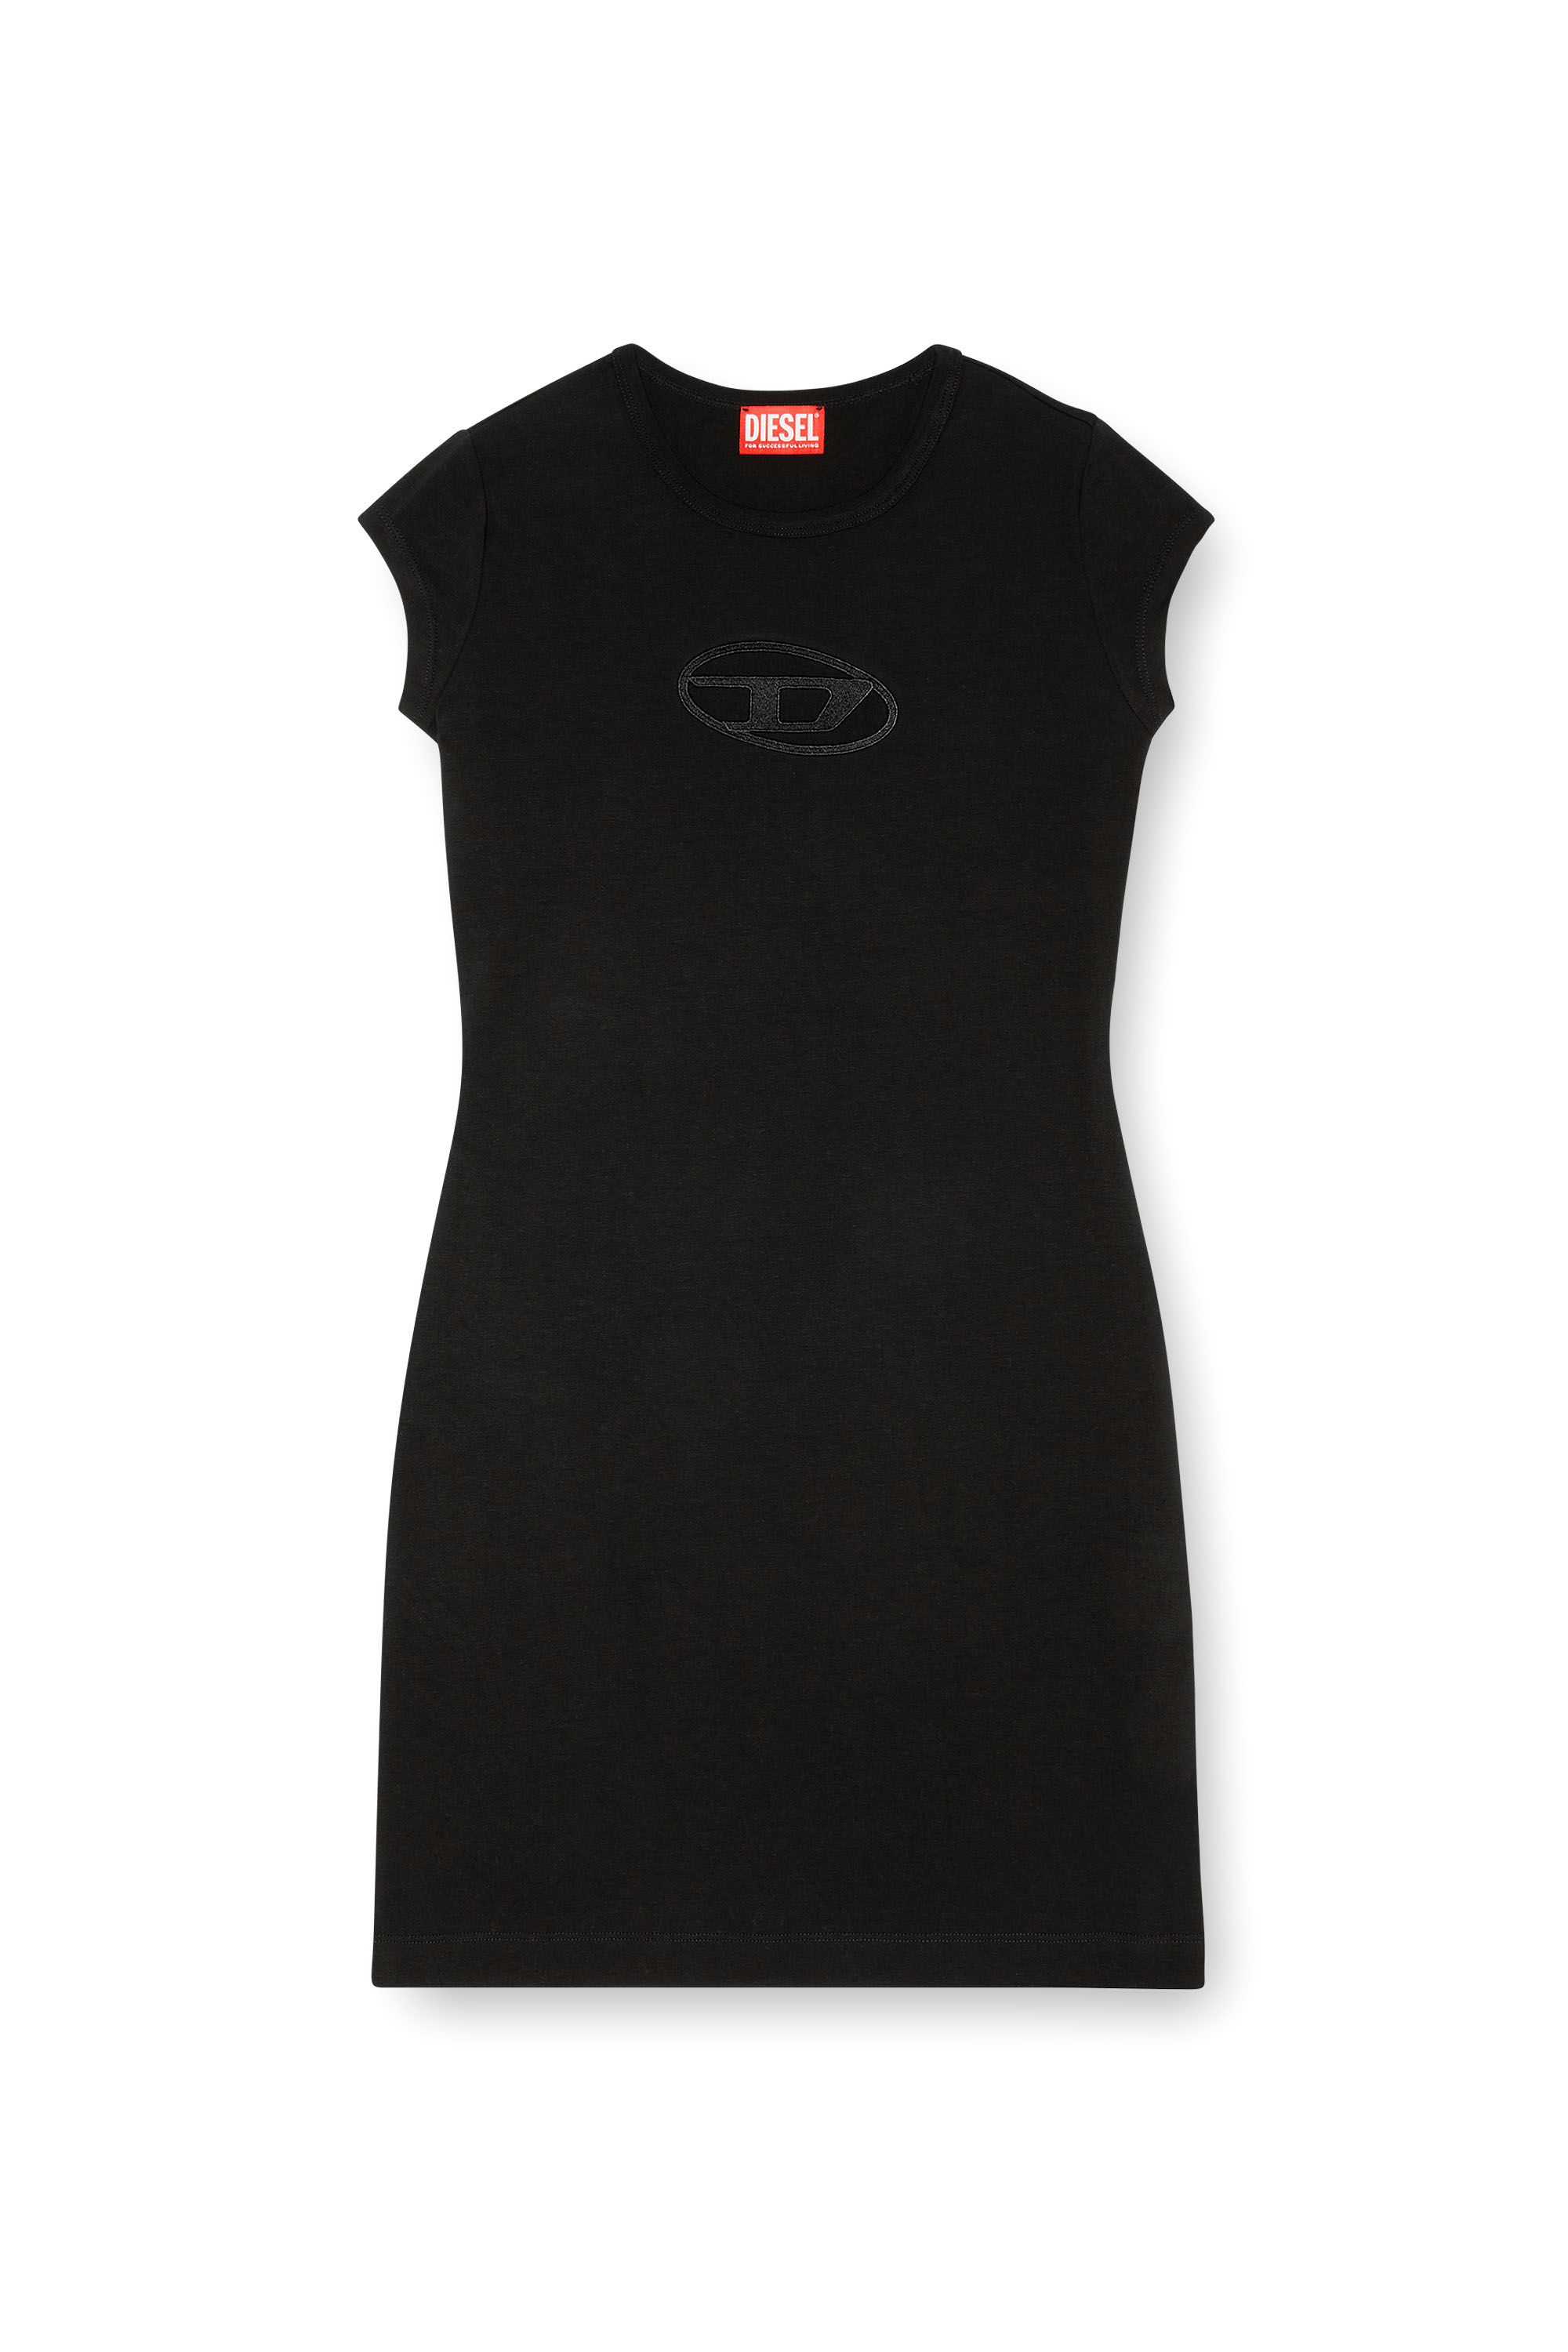 Diesel - D-ANGIEL, Mujer Vestido corto in Negro - Image 1